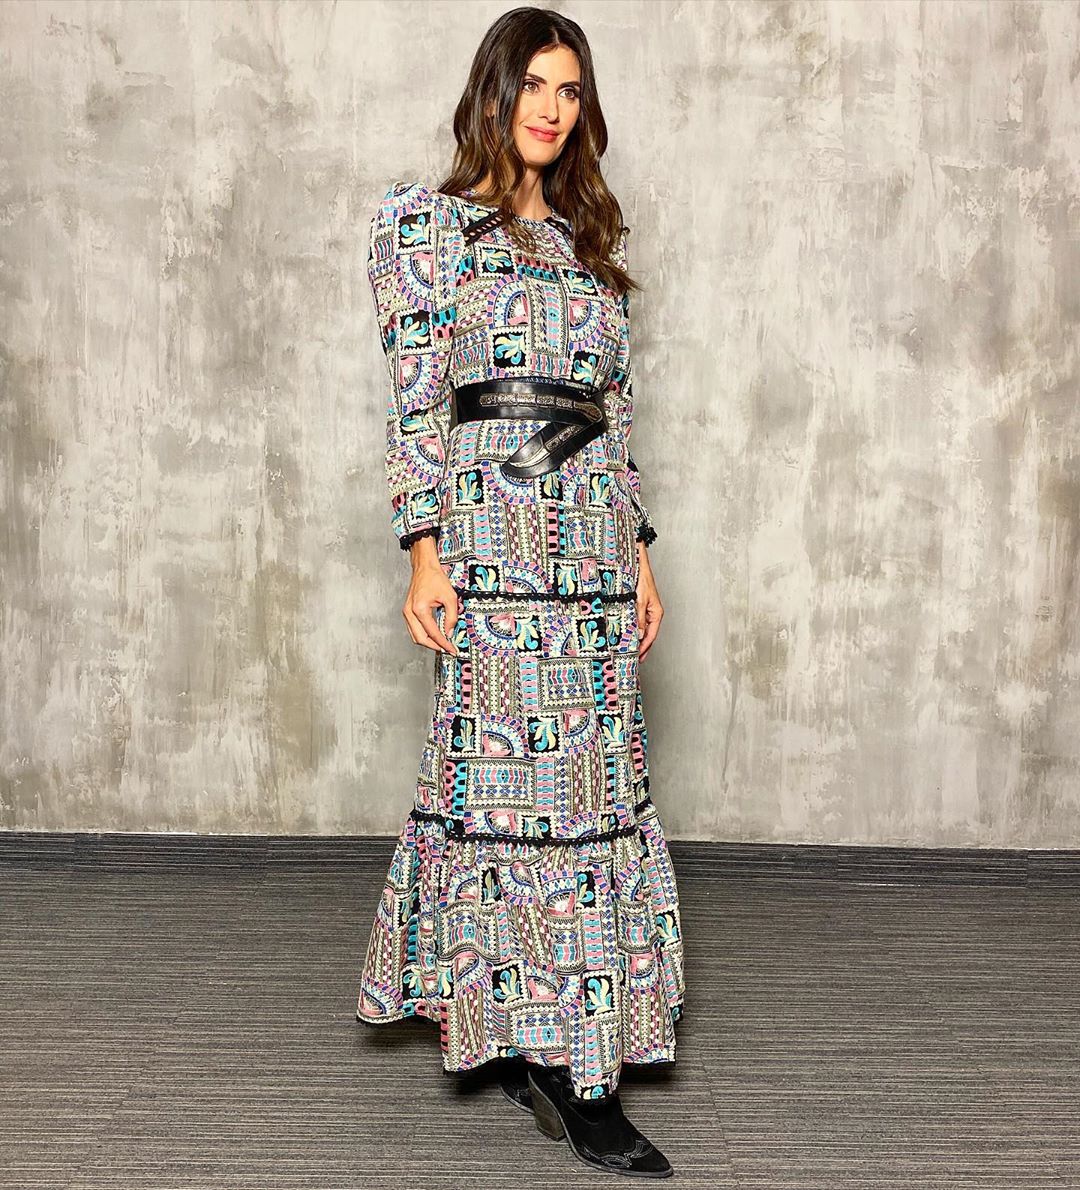 Isabella Fiorentino usa vestido estampado para o Esquadrão da Moda